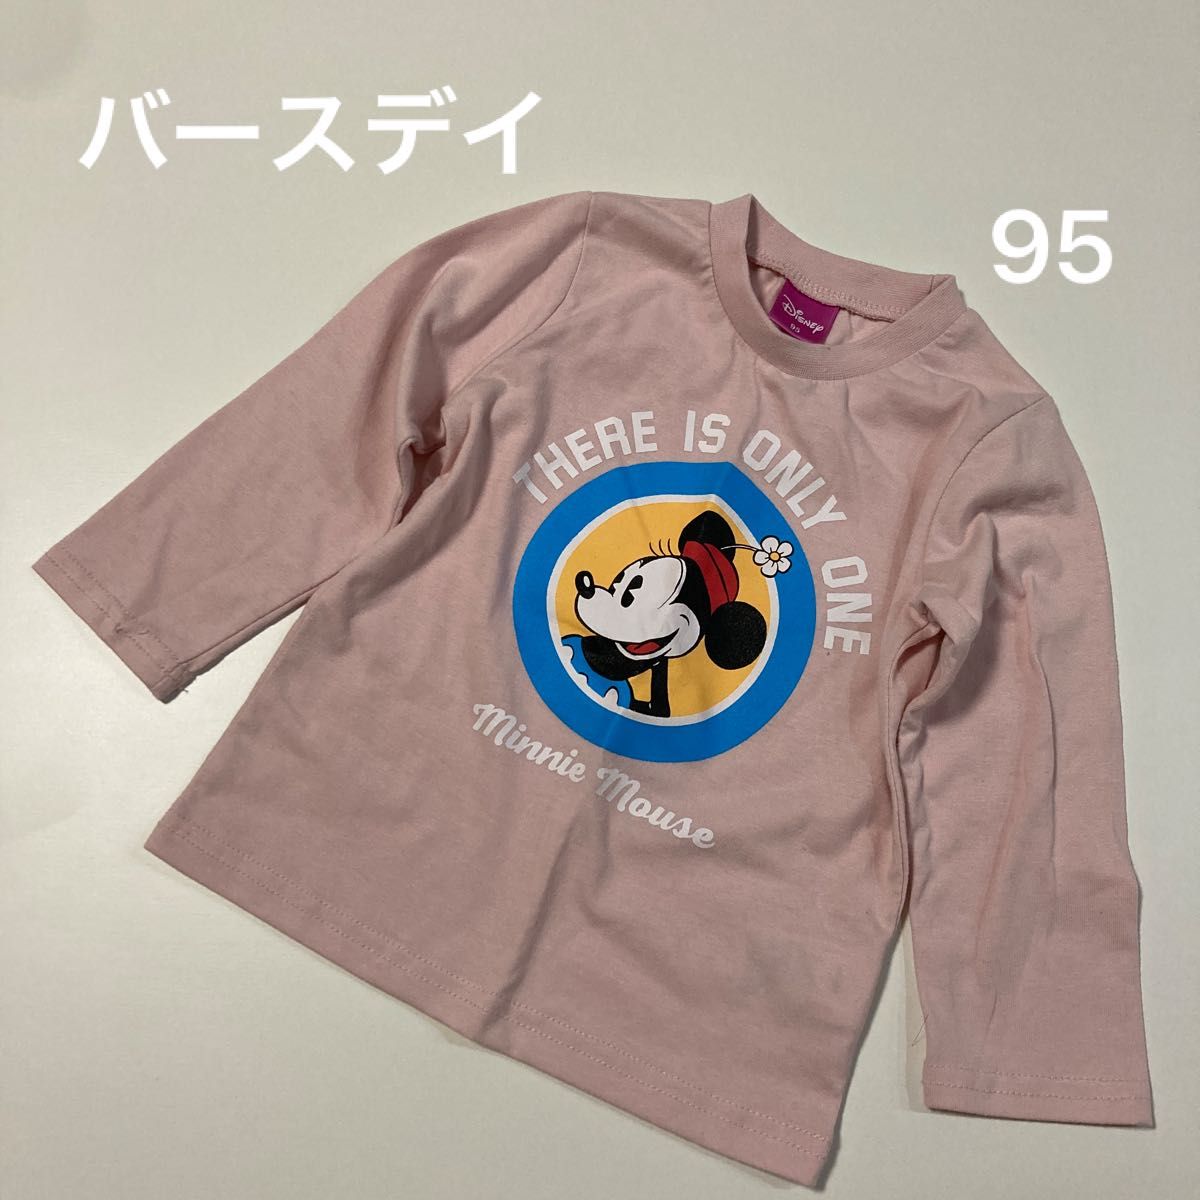 173 長袖シャツ Tシャツ 長袖 ミニーちゃん ディズニー Disney ピンク 95 サイズ こども服